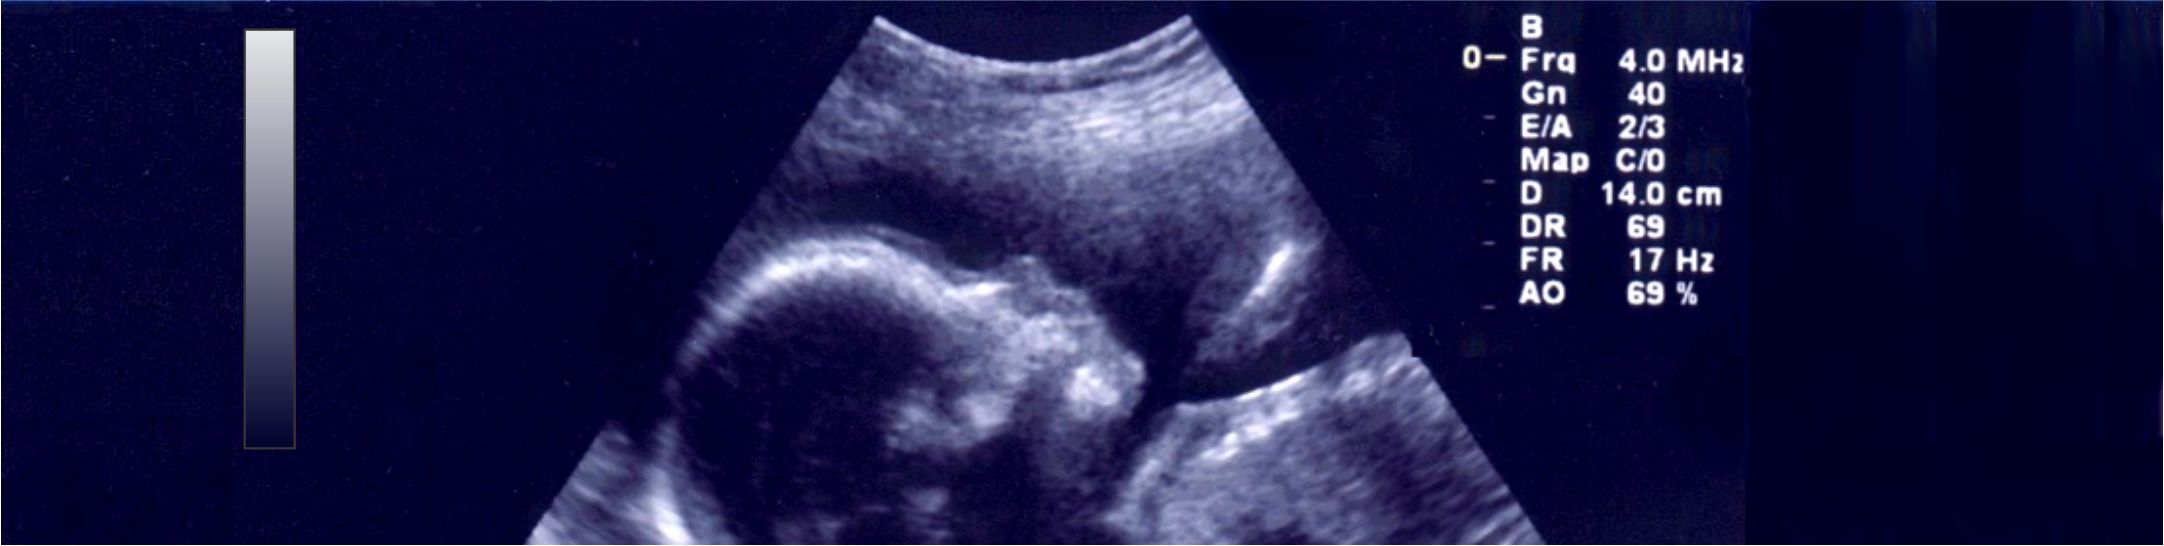 imagen de ultrasonido